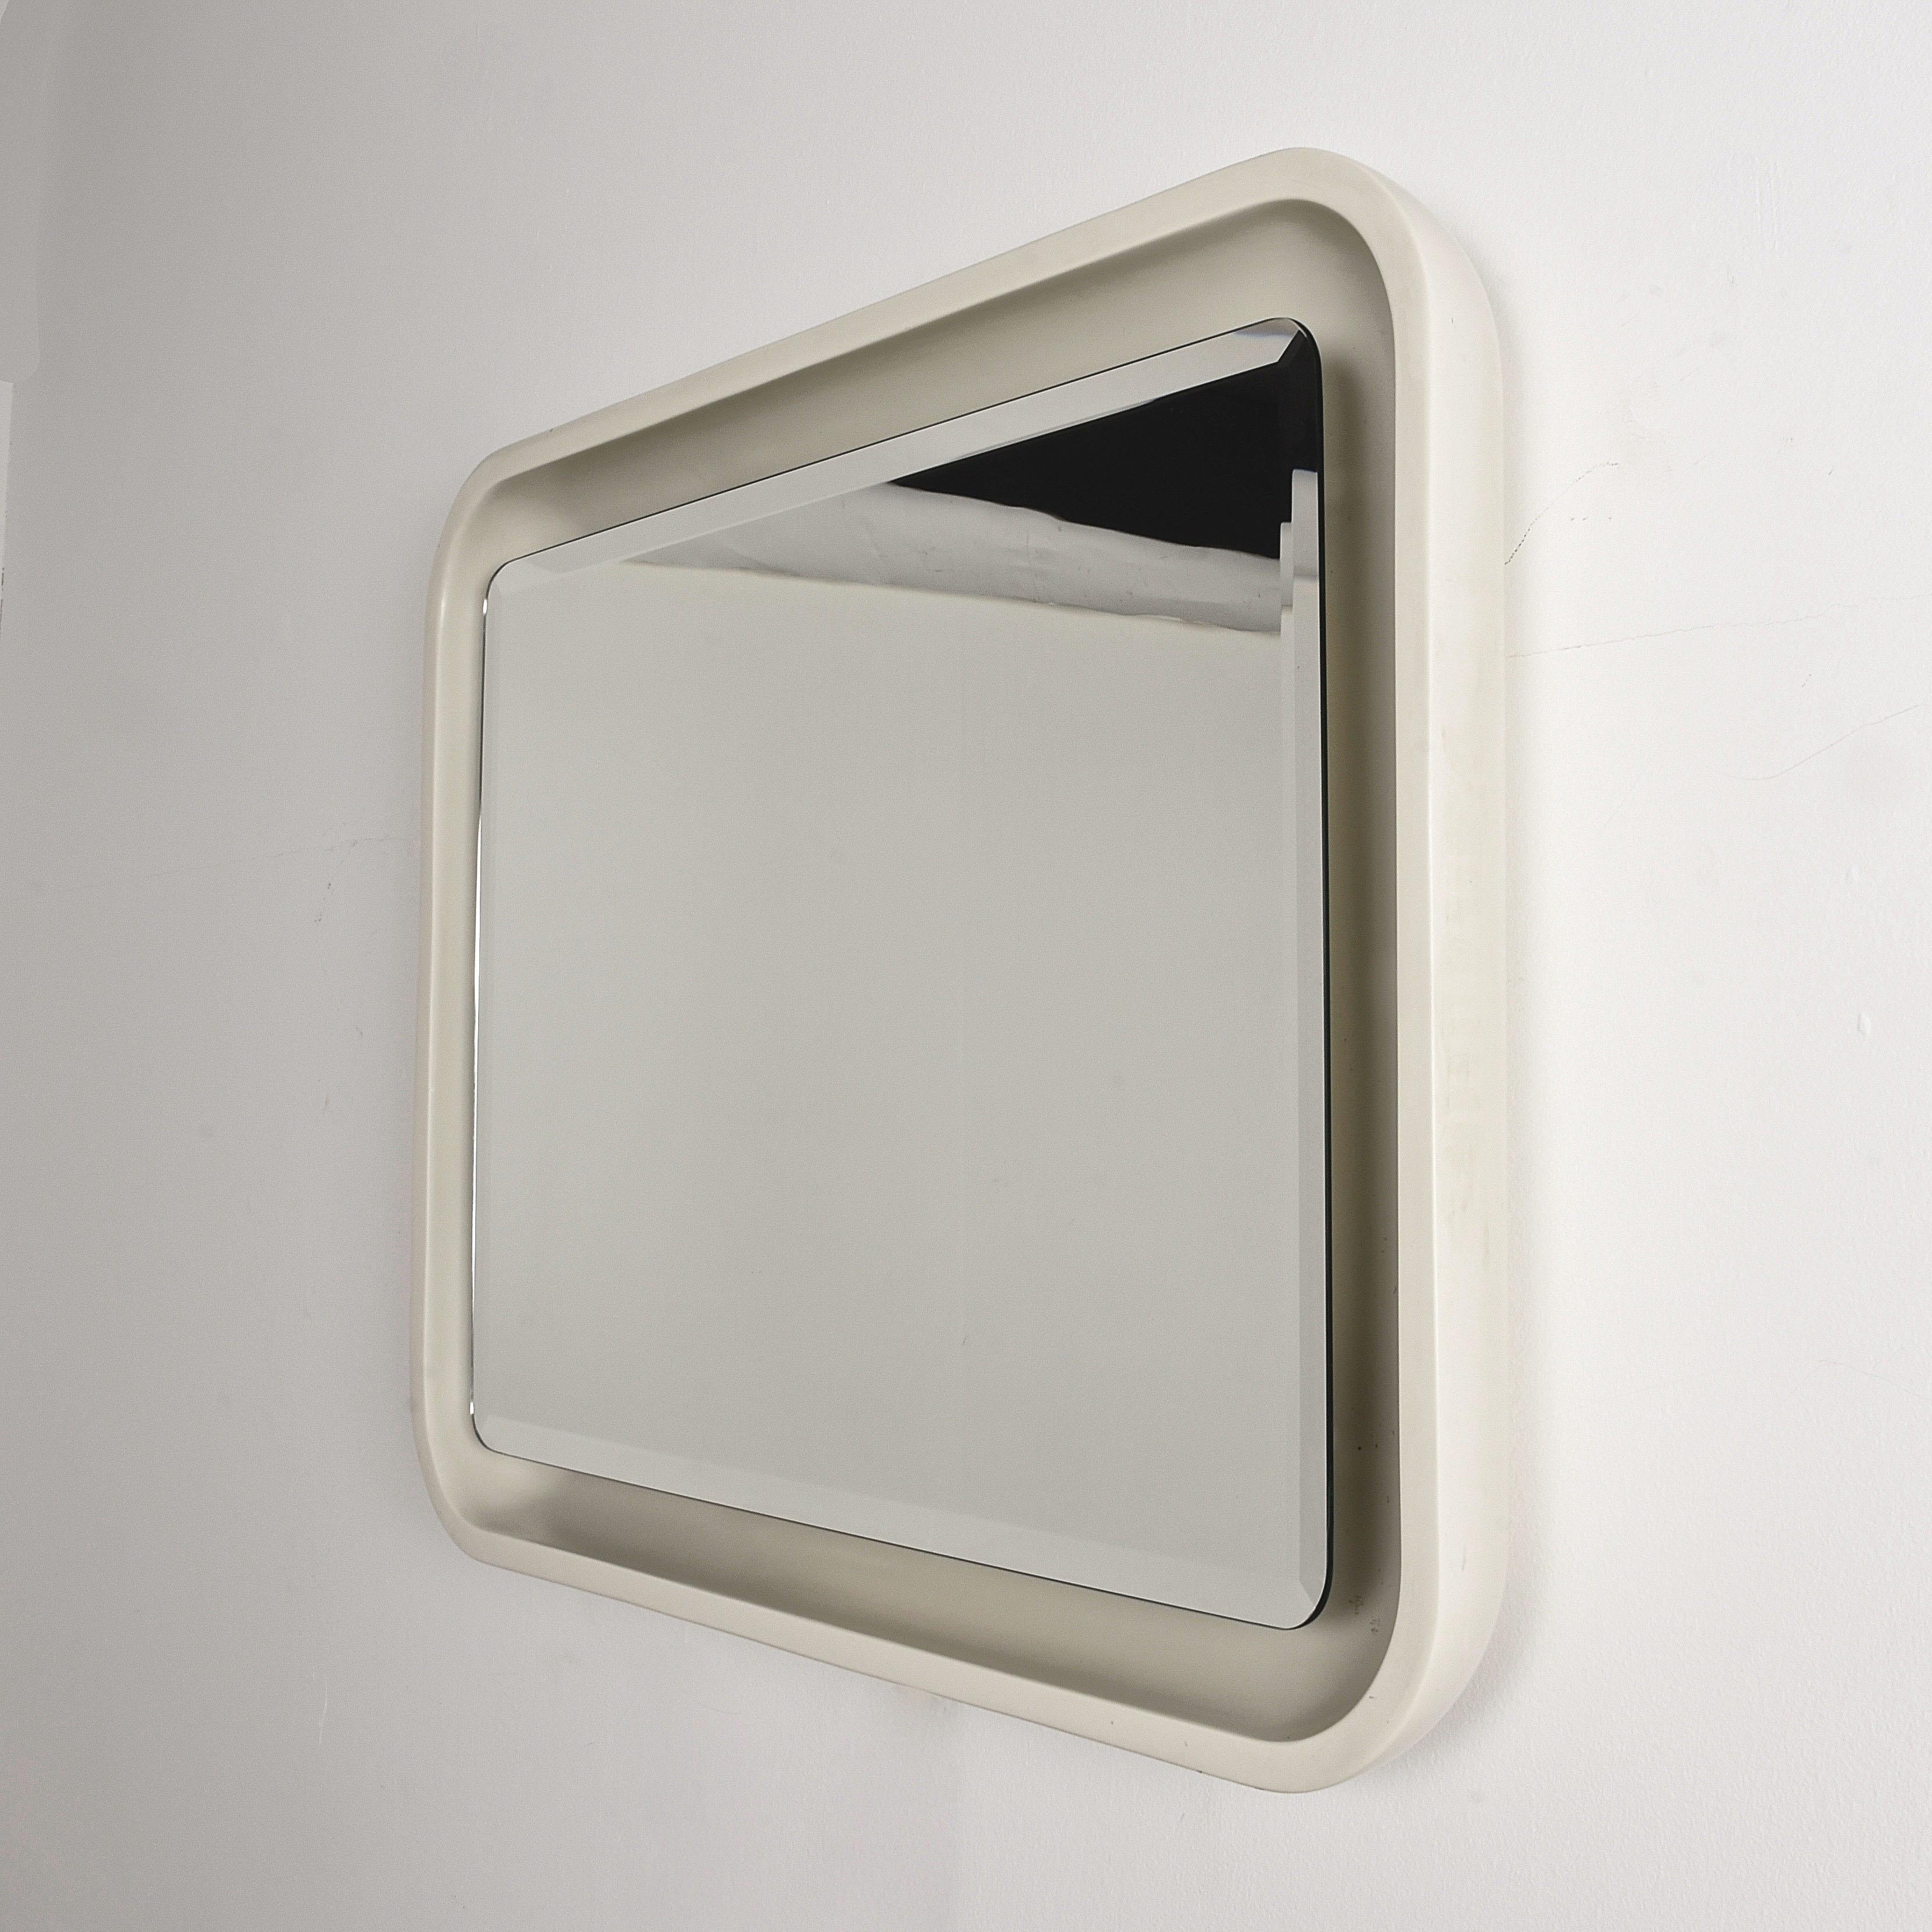 Mid-Century Modern Italian Illuminated Backlit Rectangular Mirror, White, Italy, 1970s Midcentury